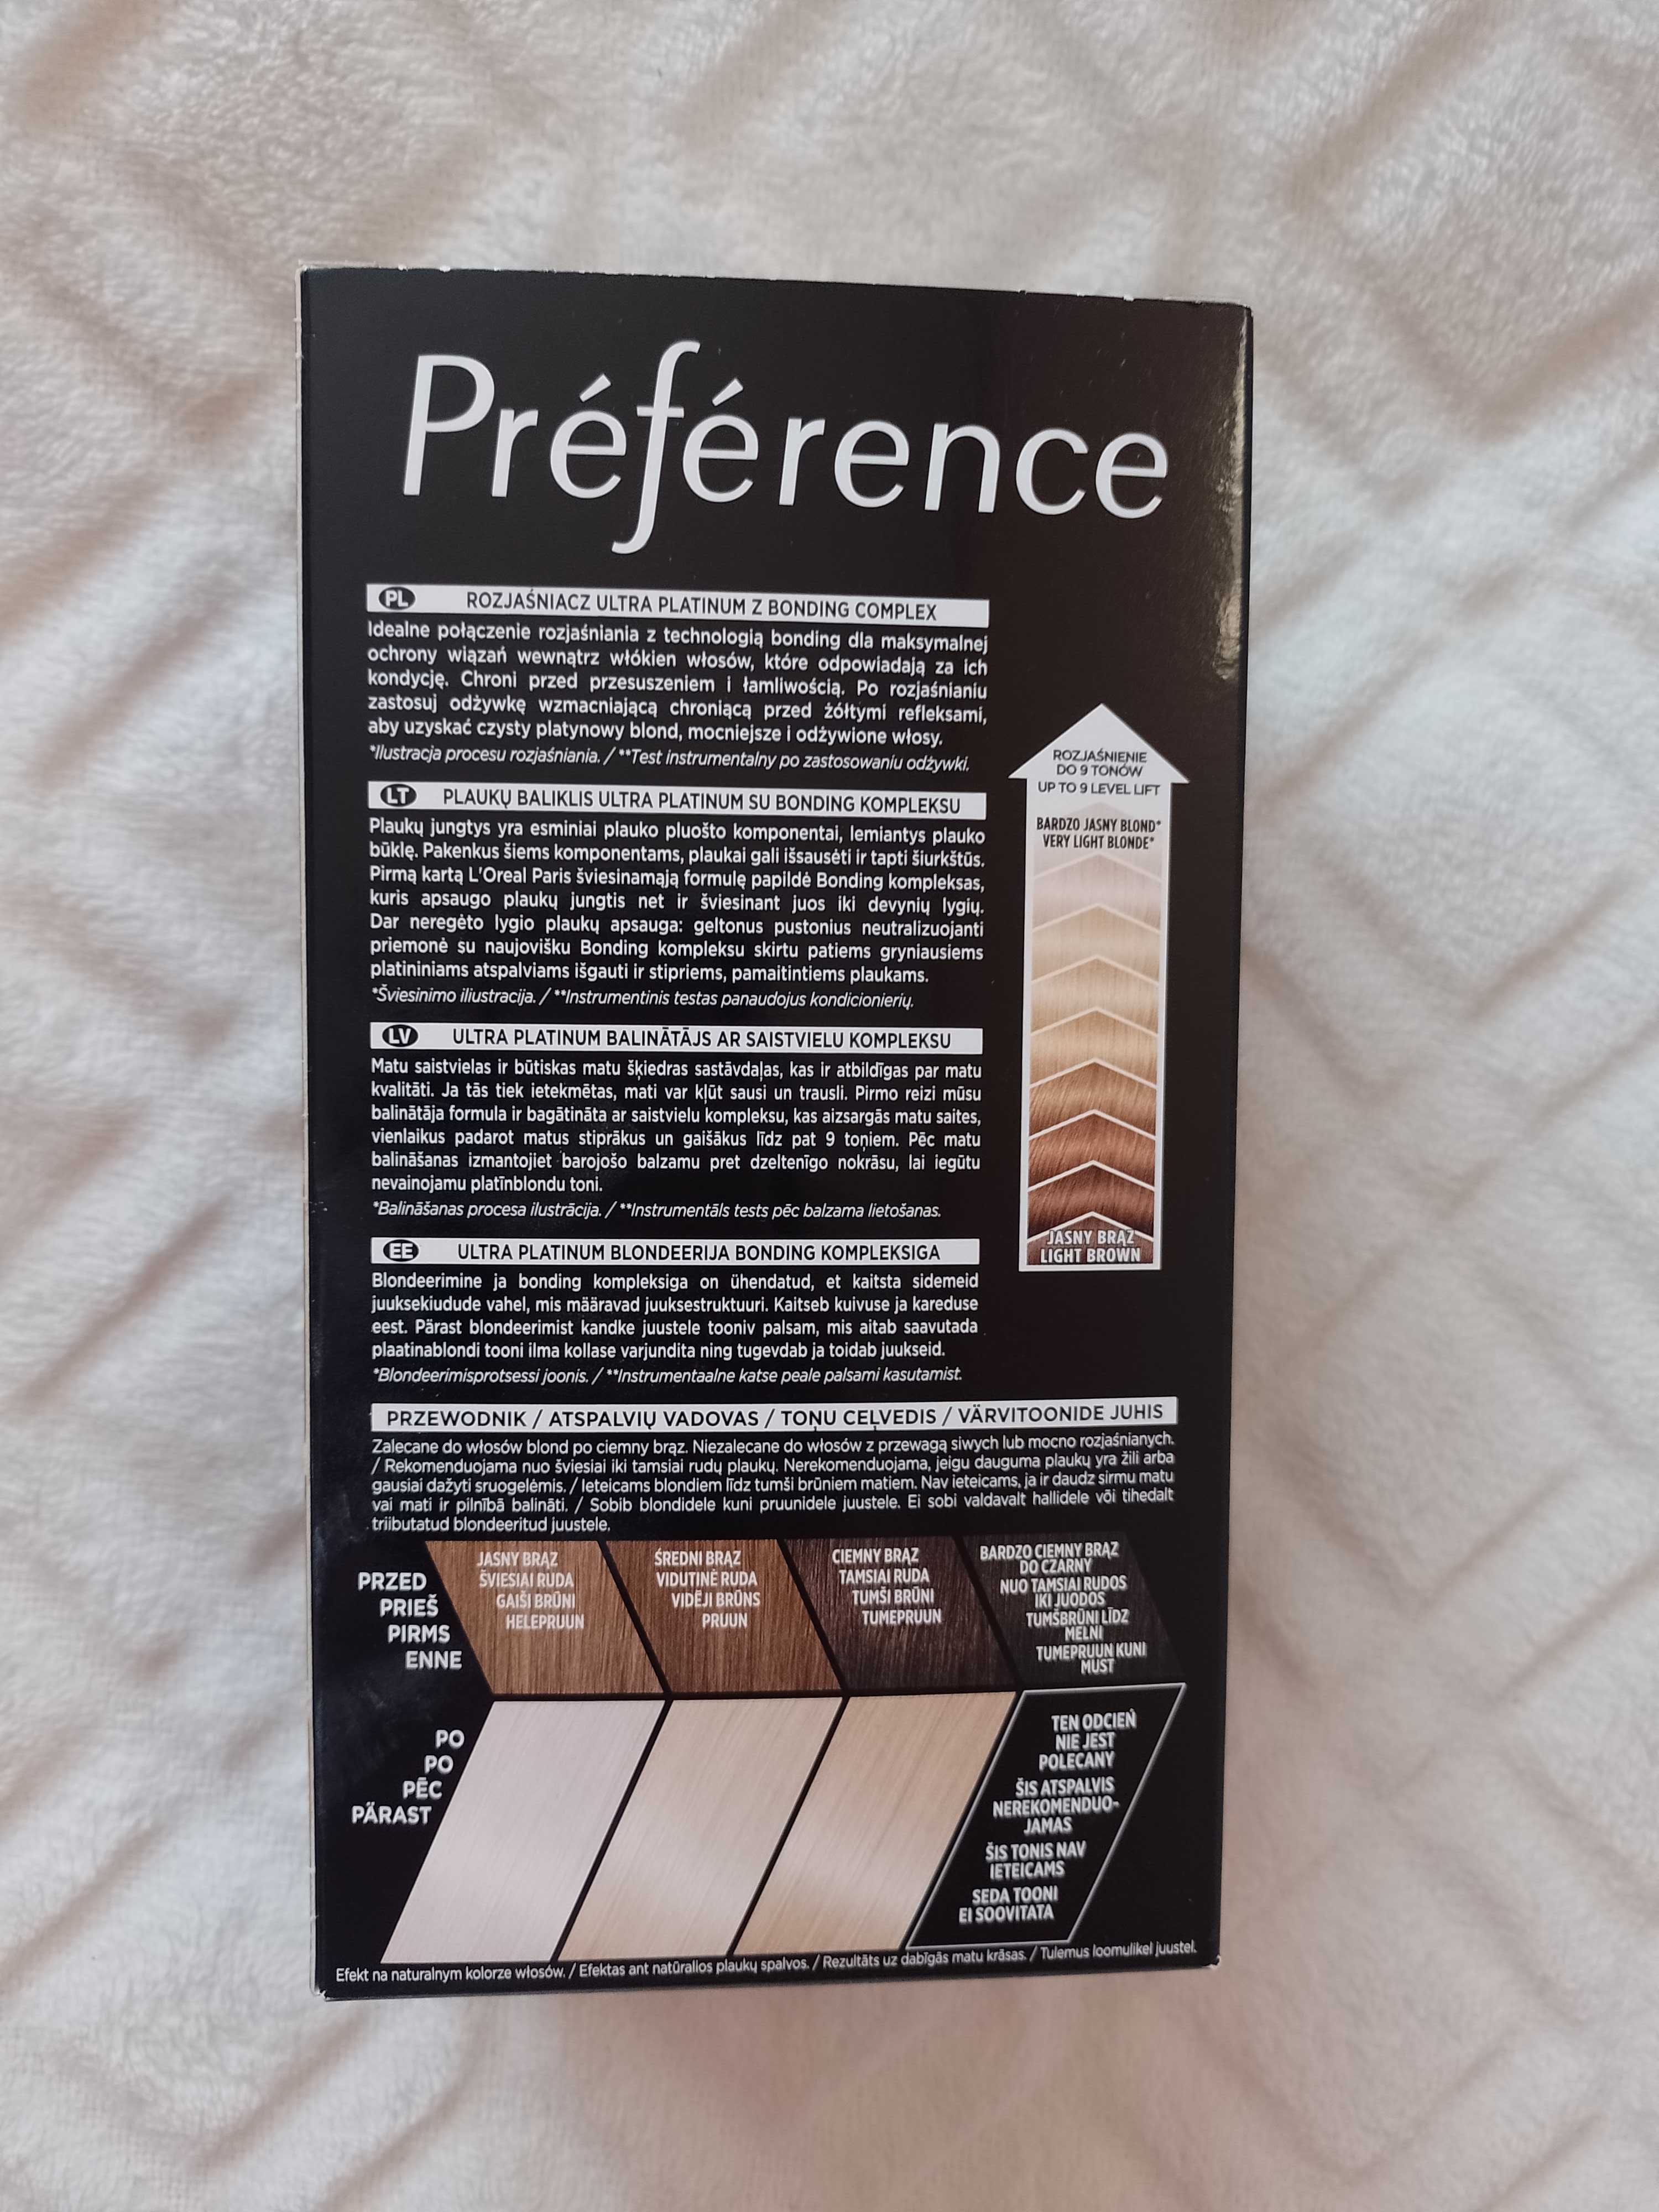 L'Oreal Paris Preference/ Ultra Platinum, farba do włosów, NOWA